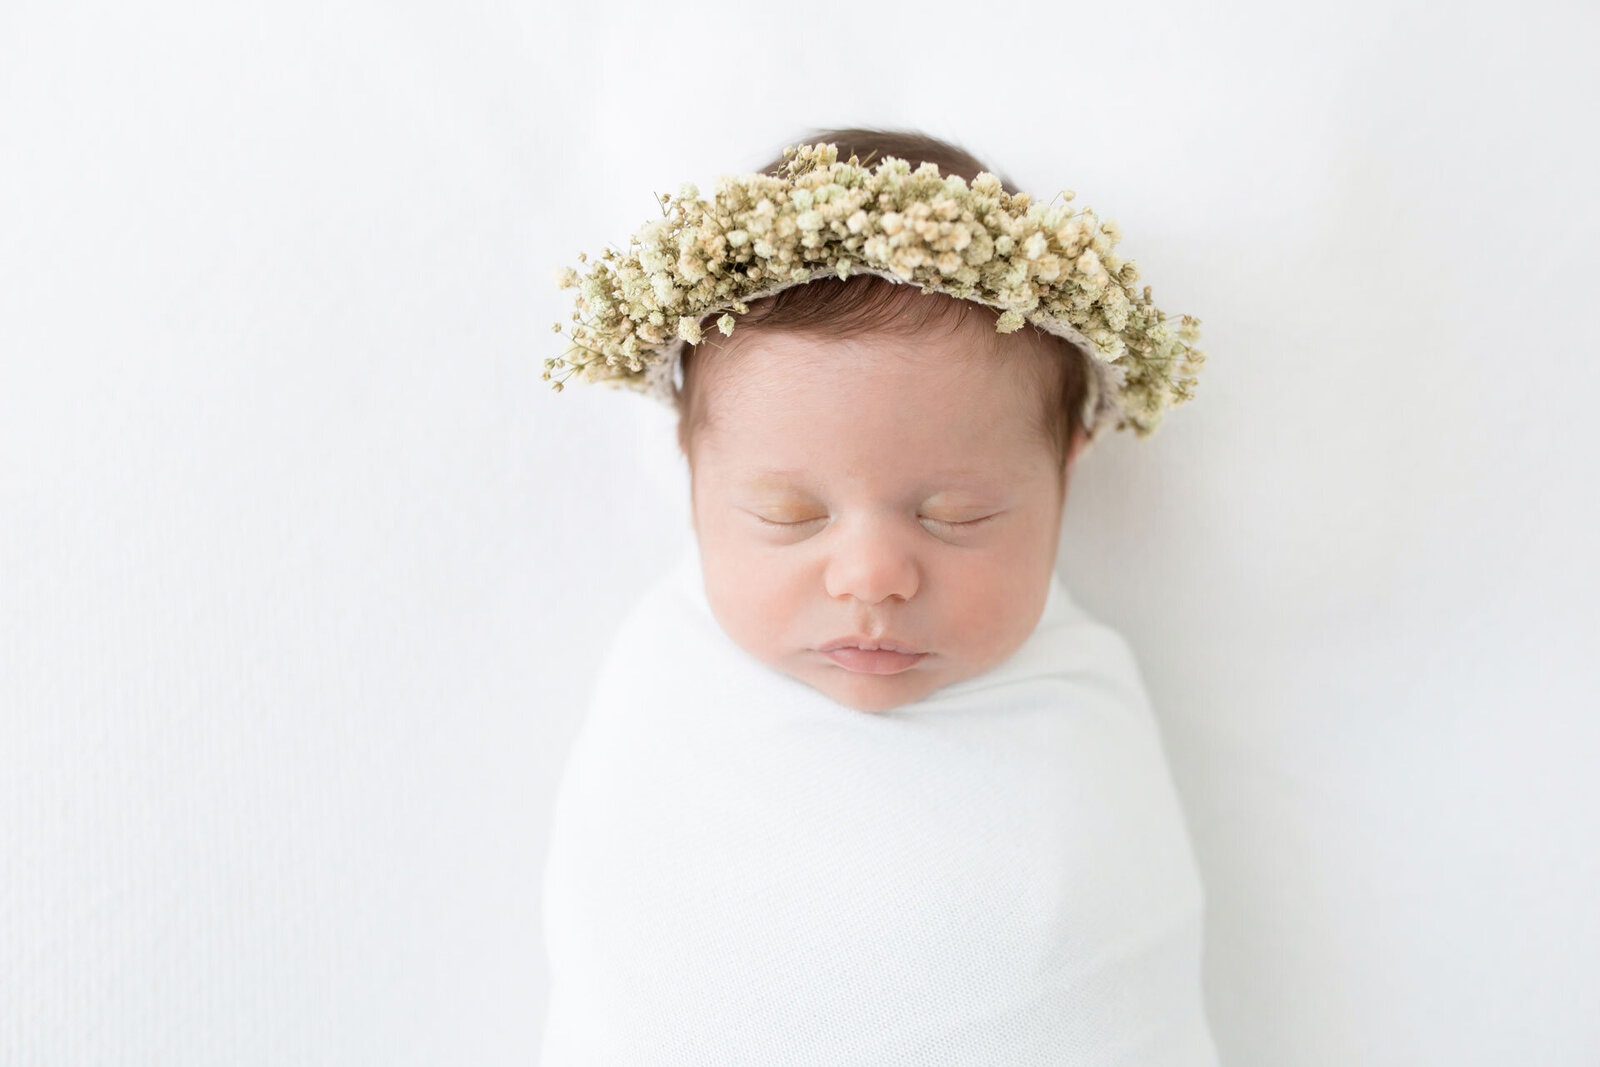 Neugeborenenshooting Bielefeld: Schlafendes Baby in weißer Decke mit üppigem Blumenkranz auf dem Kopf